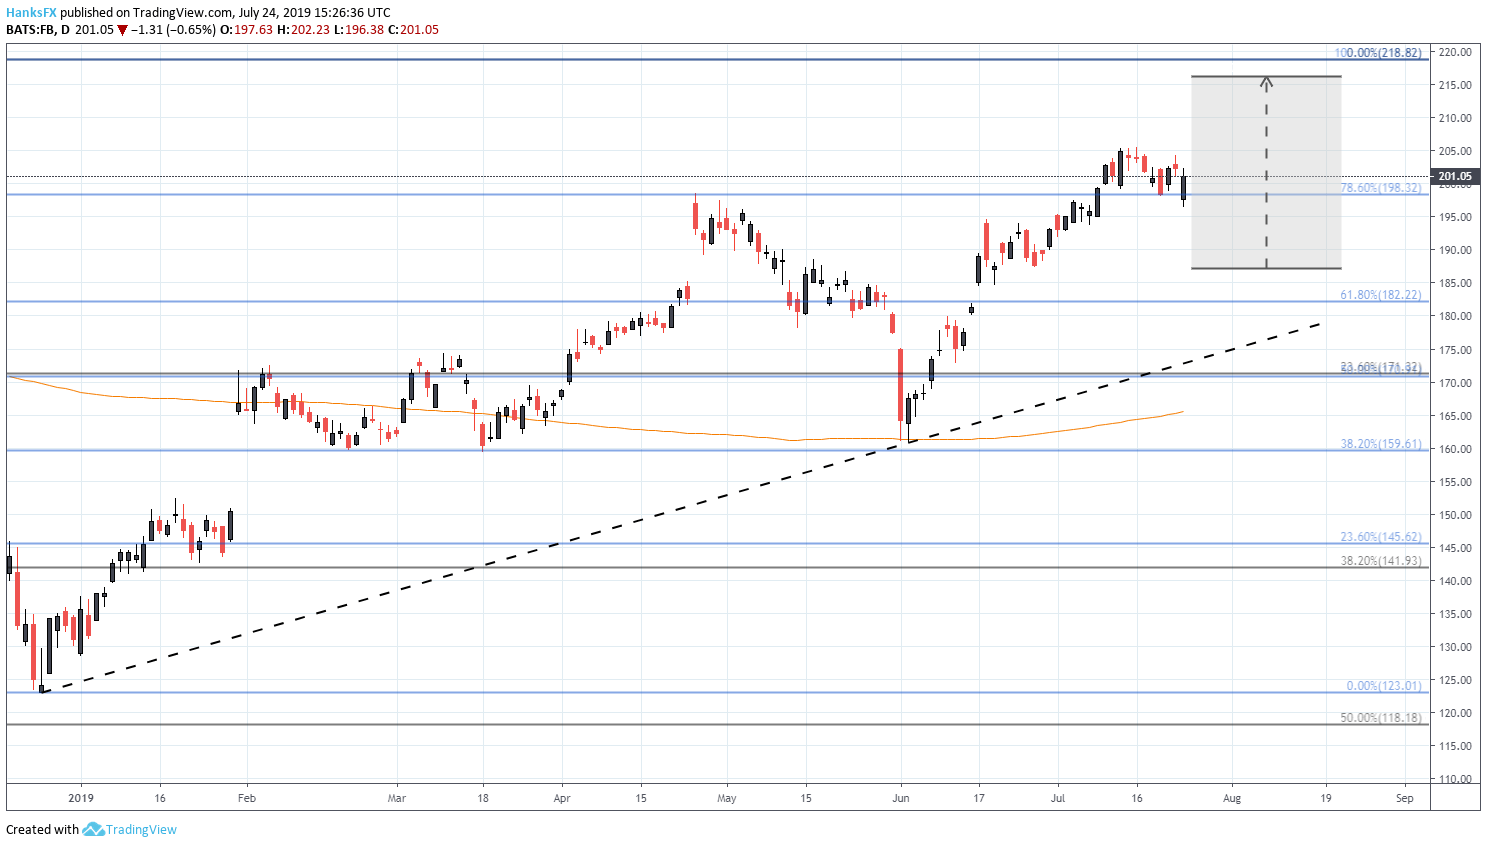 Tsla Stock Chart